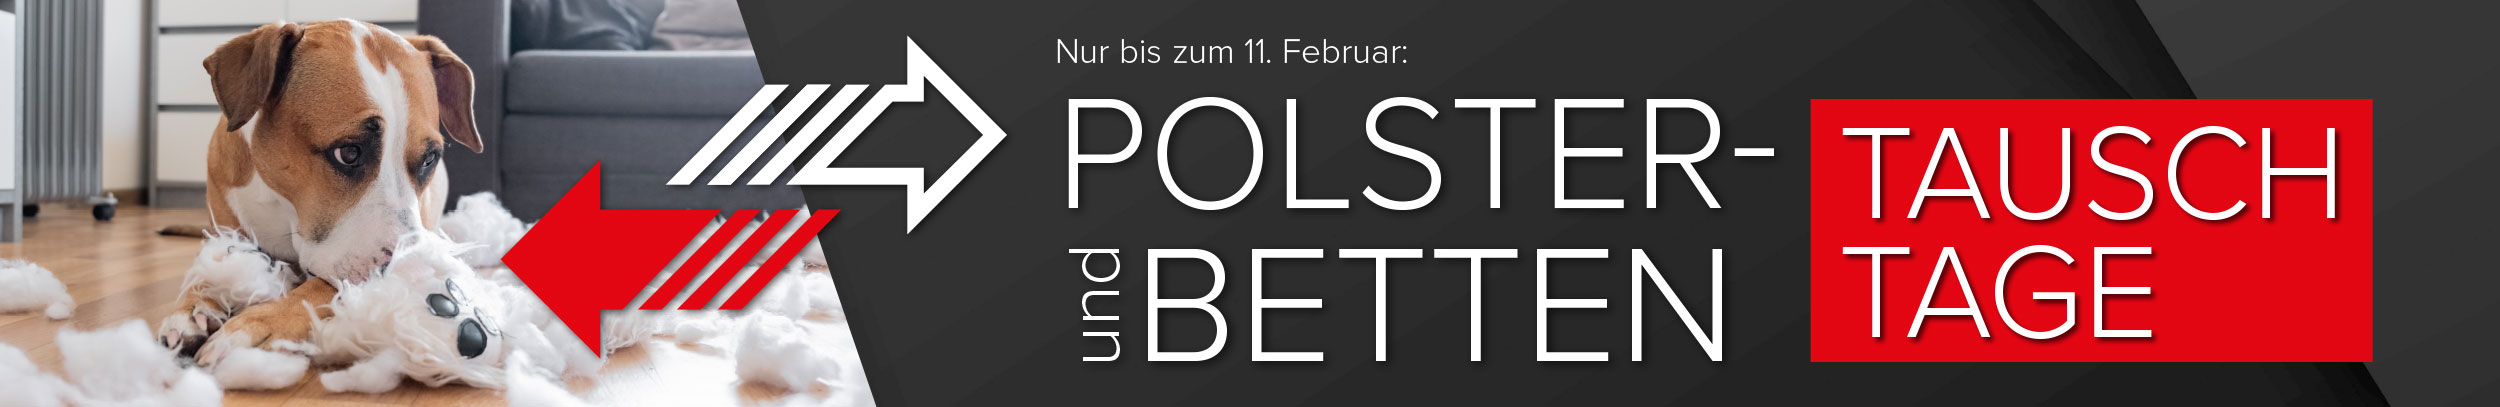 Polster und Bettentauschtage bei Möbel Hartwig nur bis zum 11. Februar